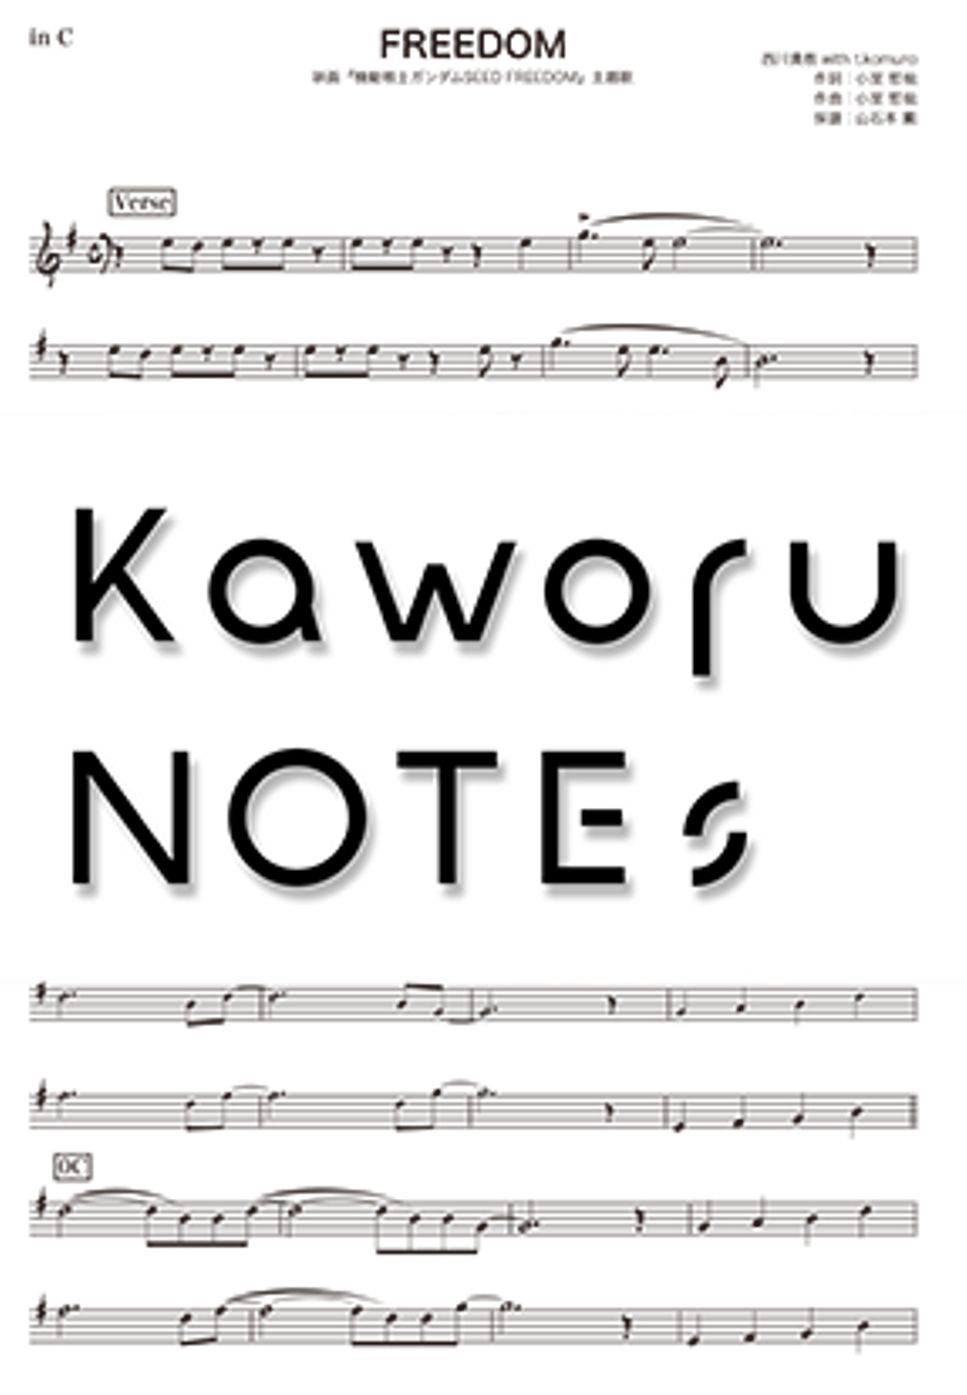 西川貴教 - FREEDOM（in C /映画『機動戦士ガンダムSEED FREEDOM』主題歌） by Kaworu NOTEs